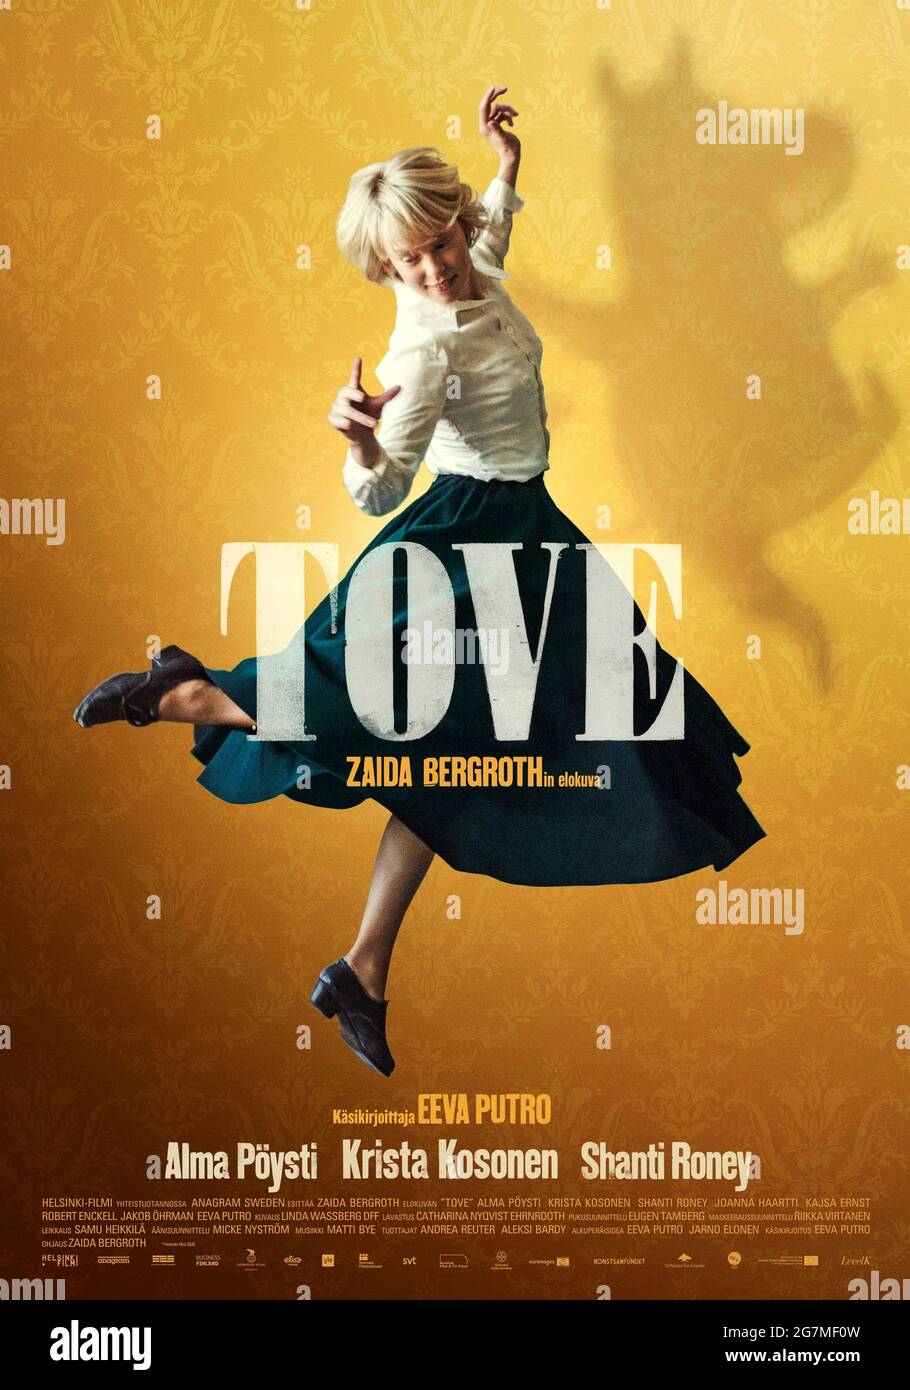 Tove (2020) unter der Regie von Zaida Bergroth mit Alma Pöysti, Krista Kosoonen und Shanti Roney. Biopic über die schwedische Künstlerin Tove Jansson, die mit der Kreation der Mumins weltweit Erfolg gefunden hat. Stockfoto